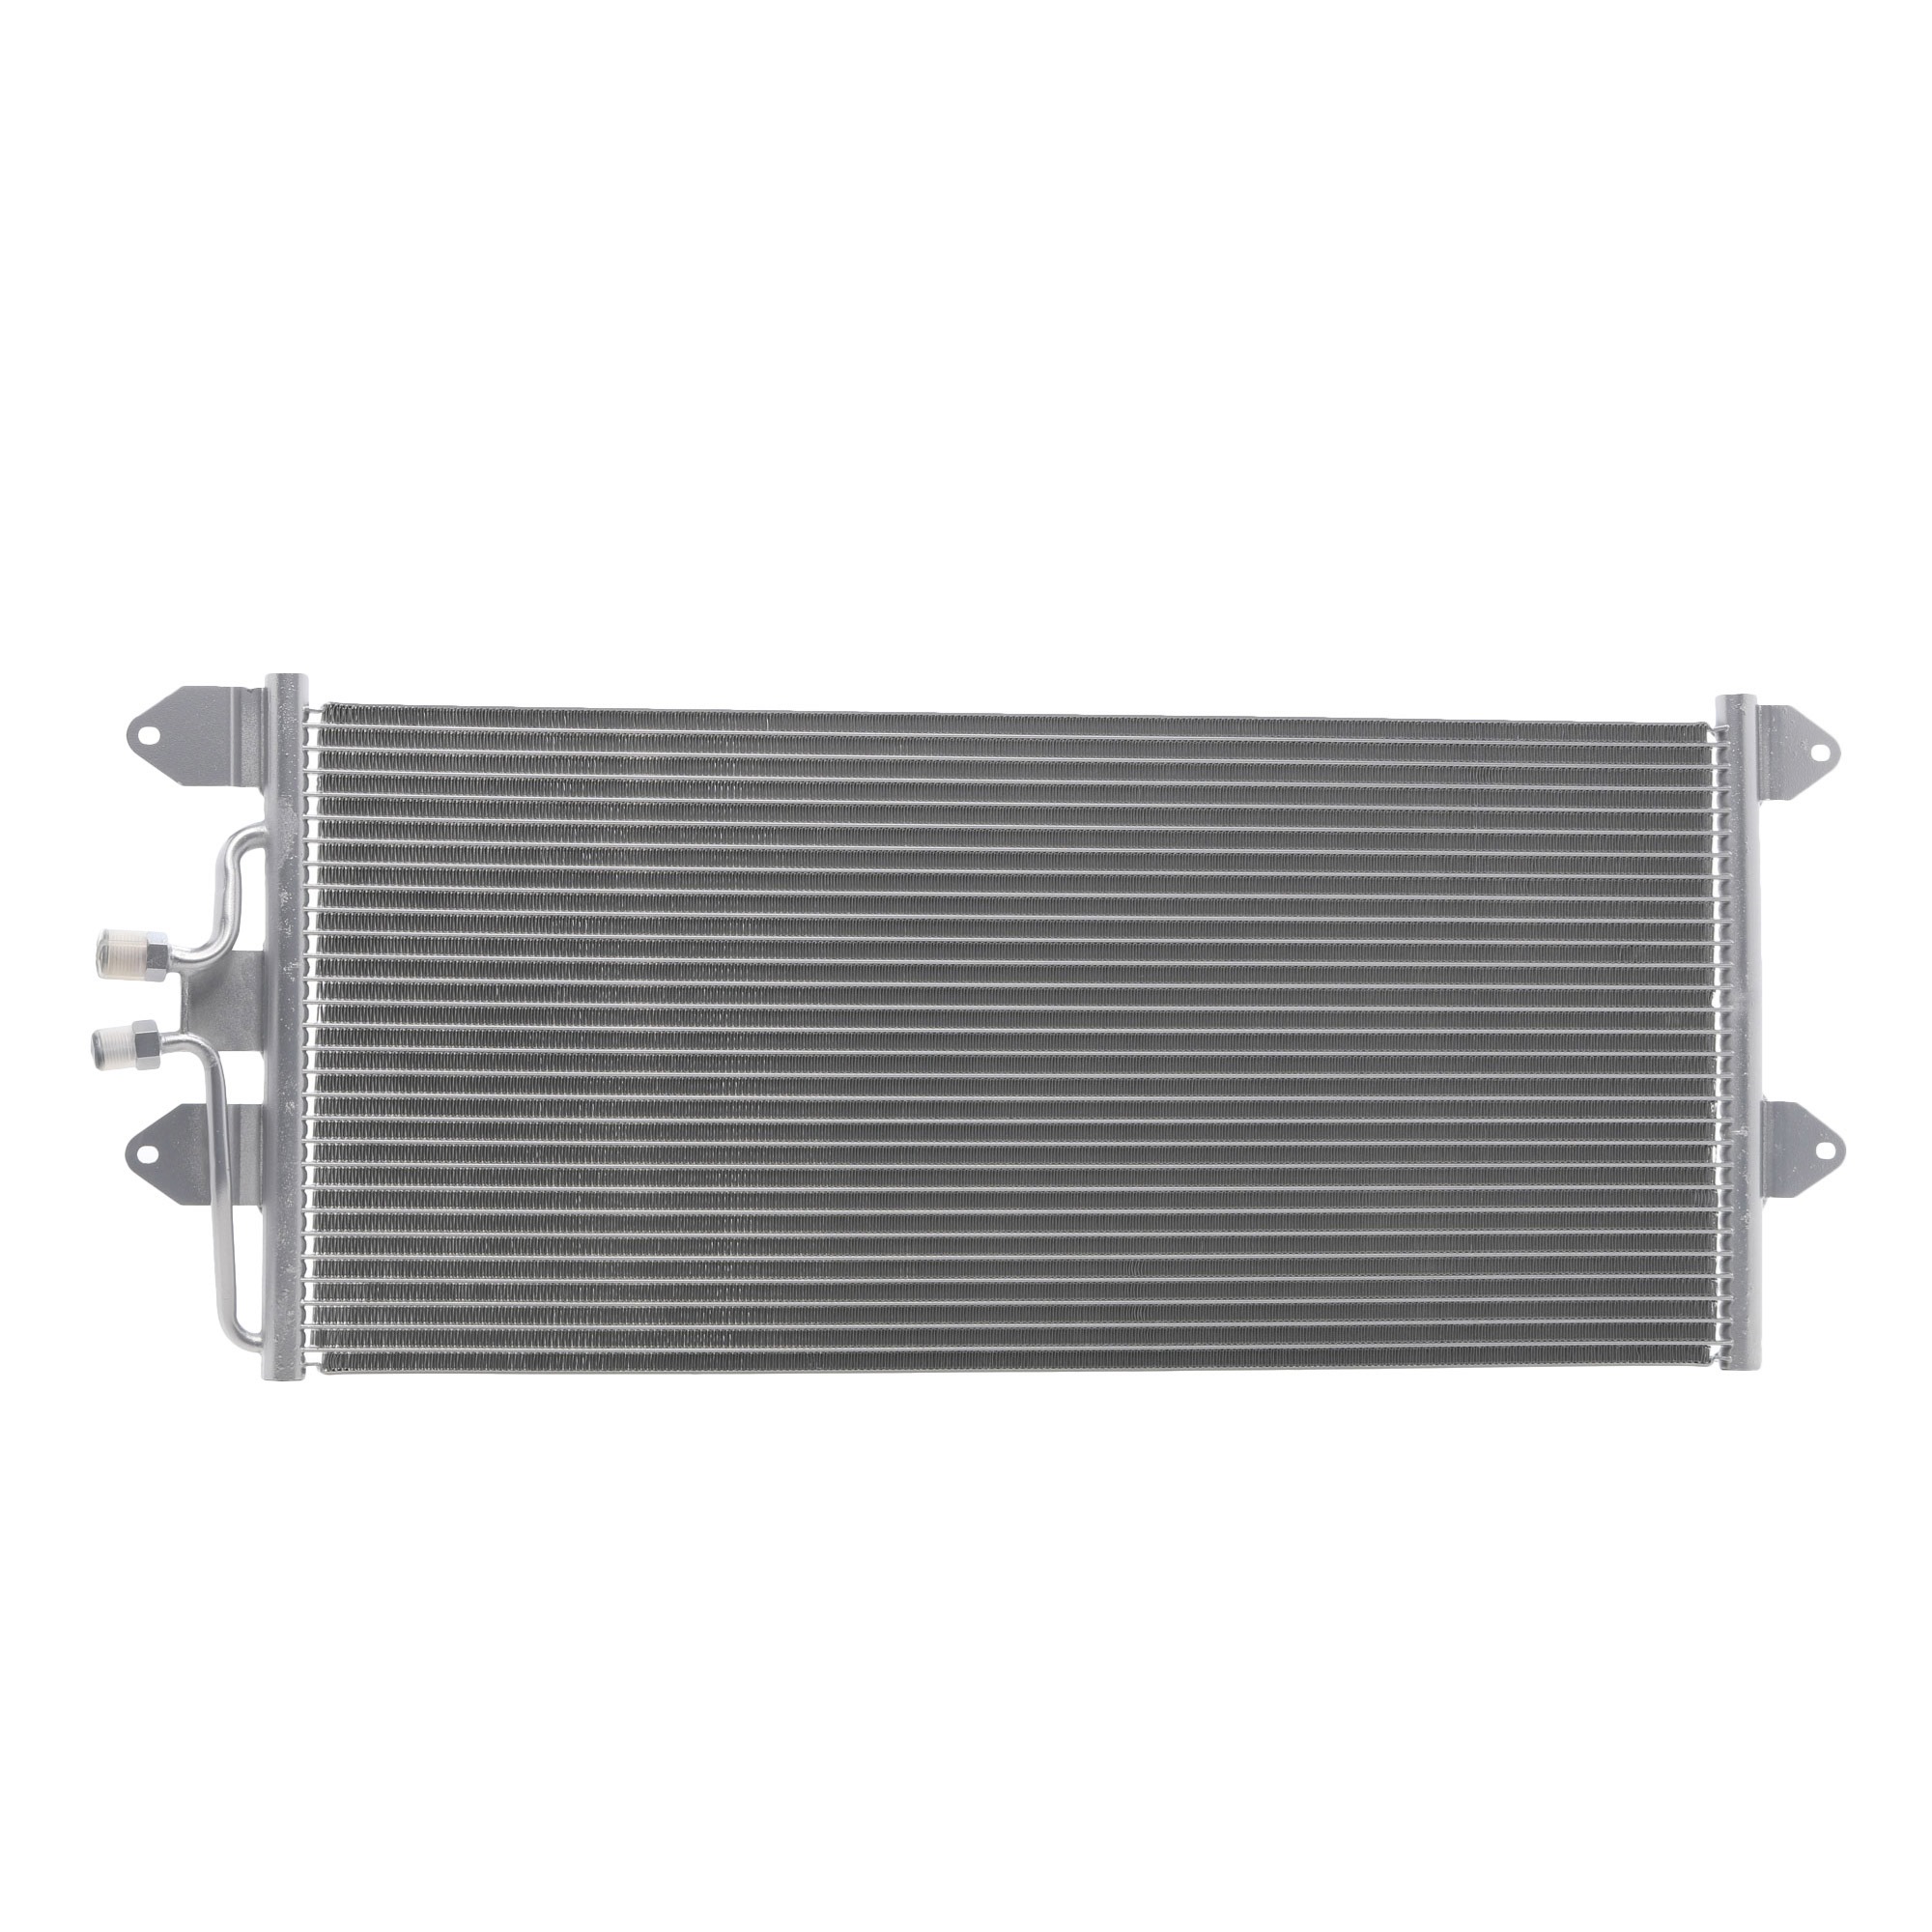 RIDEX 448C0443 Air conditioning condenser without dryer, 680x296x16, Aluminium